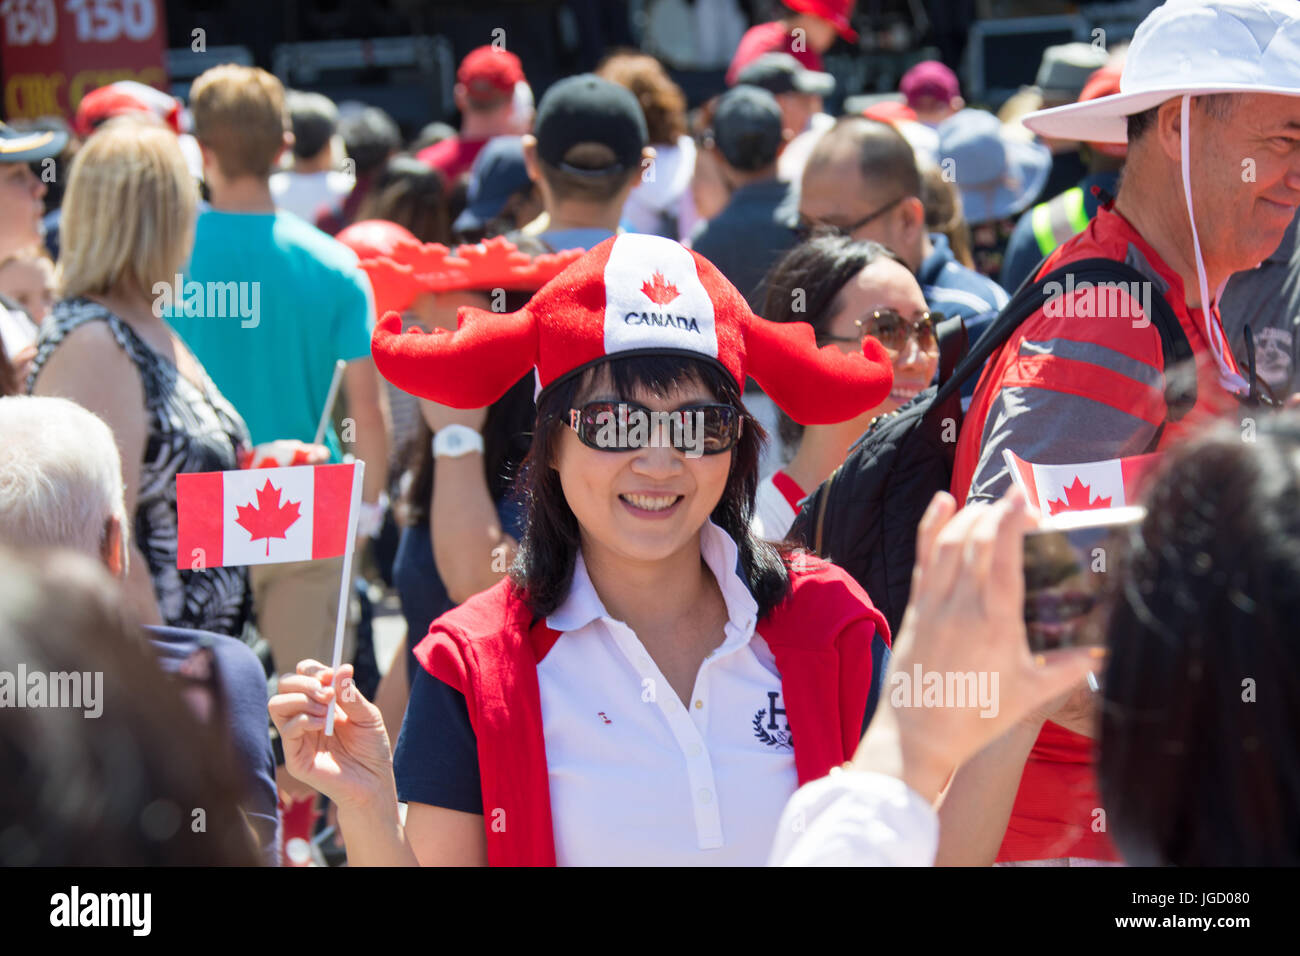 Asiatische kanadischen feiert die Kanada 150 Tag in Vancouver, 1. Juli 2017, Kanada Tag 150, Vancouver, Kanada Stockfoto